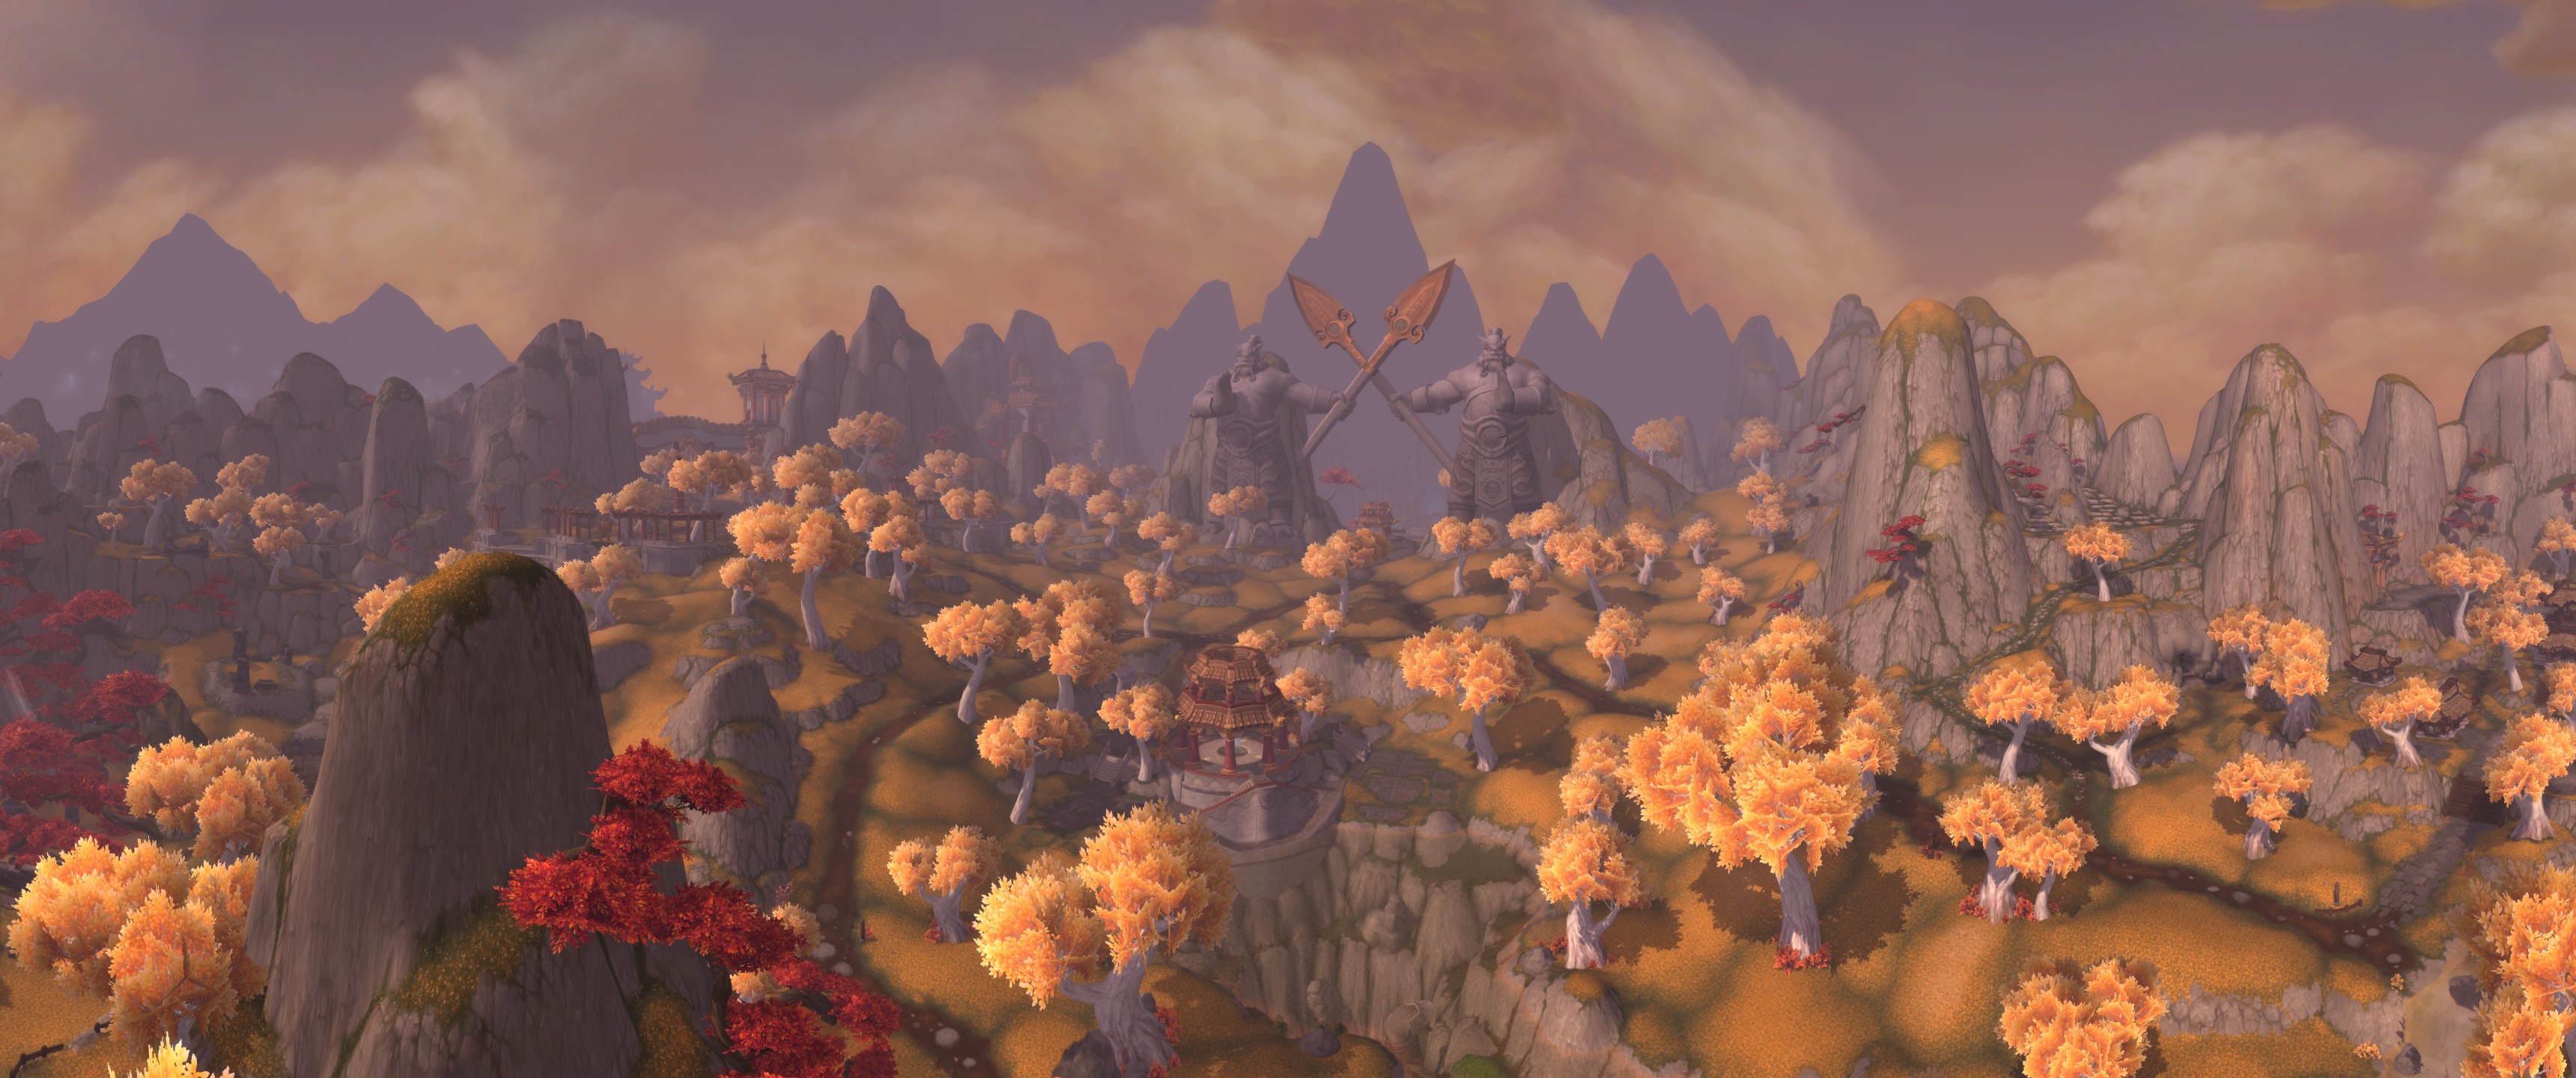 Từ vùng đất Azeroth đầy phép thuật tới các nhân vật huyền thoại của World of Warcraft, những hình nền độc đáo này sẽ đưa bạn vào một thế giới kỳ ảo với đầy đủ những chi tiết tinh tế. Hãy chiêm ngưỡng những hình nền này và khám phá thế giới WoW tuyệt vời.